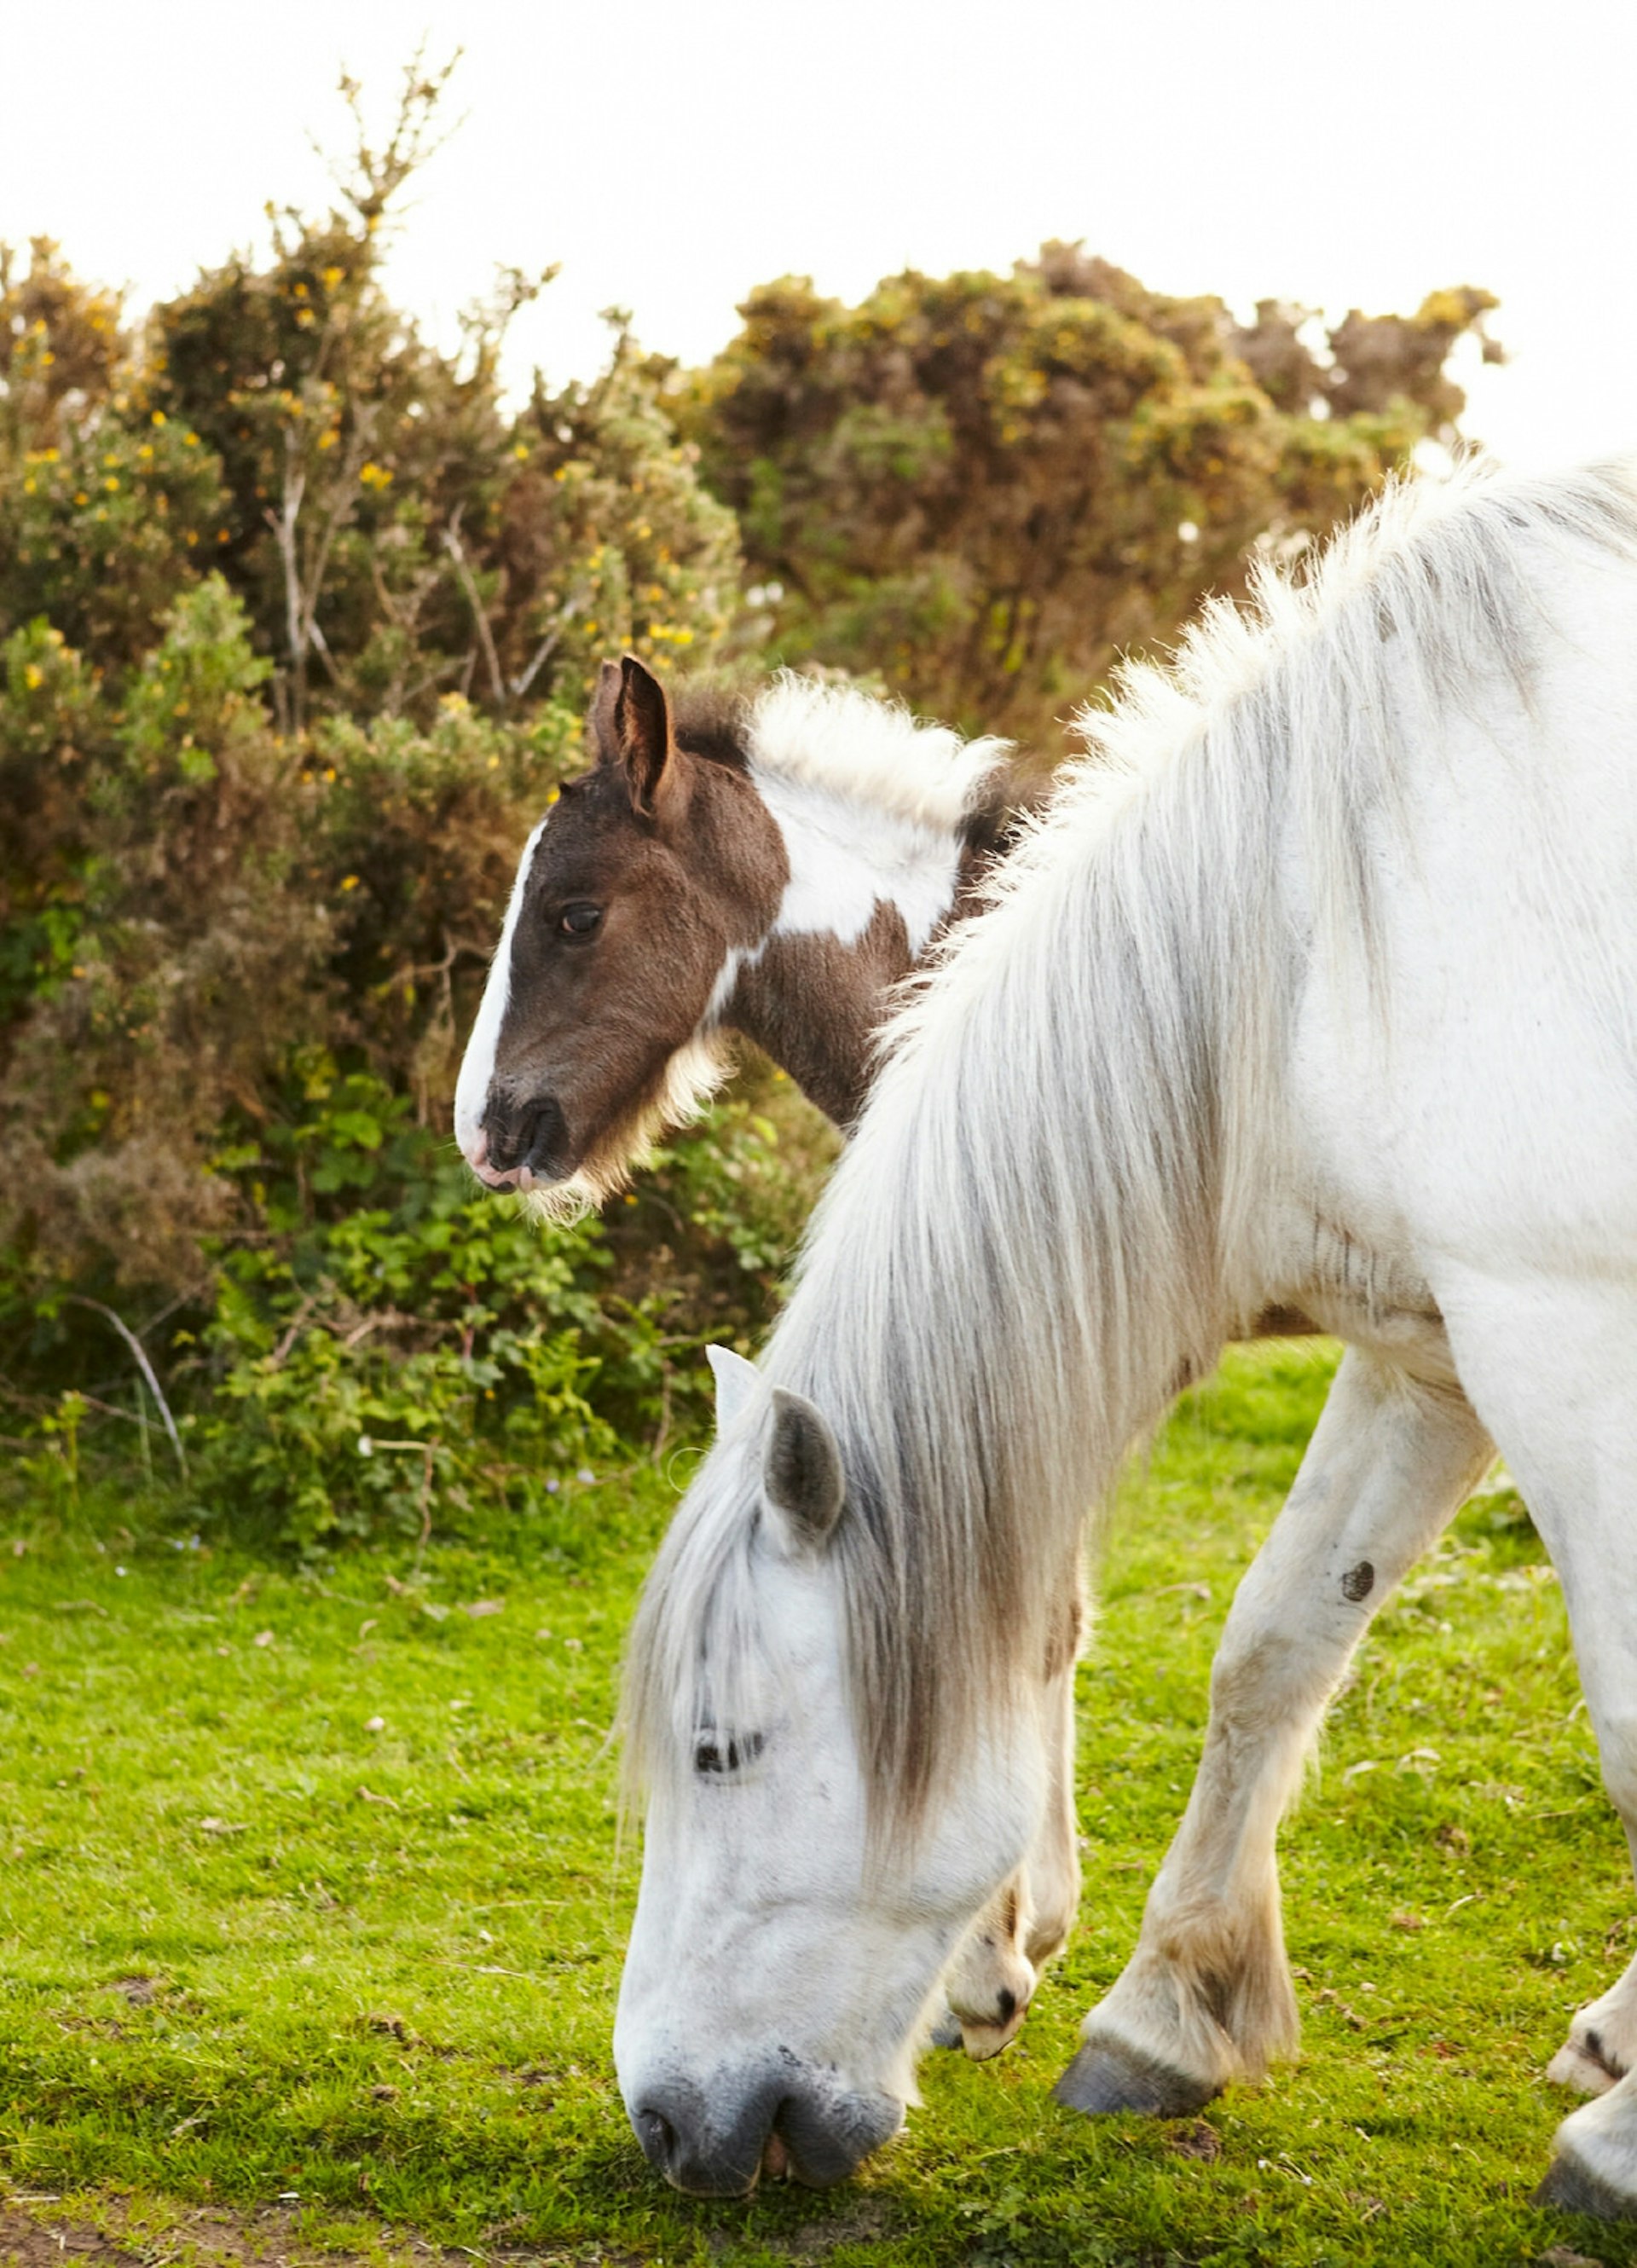 Wild ponies graze on Bodmin Moor © Matt Munro / Lonely Planet